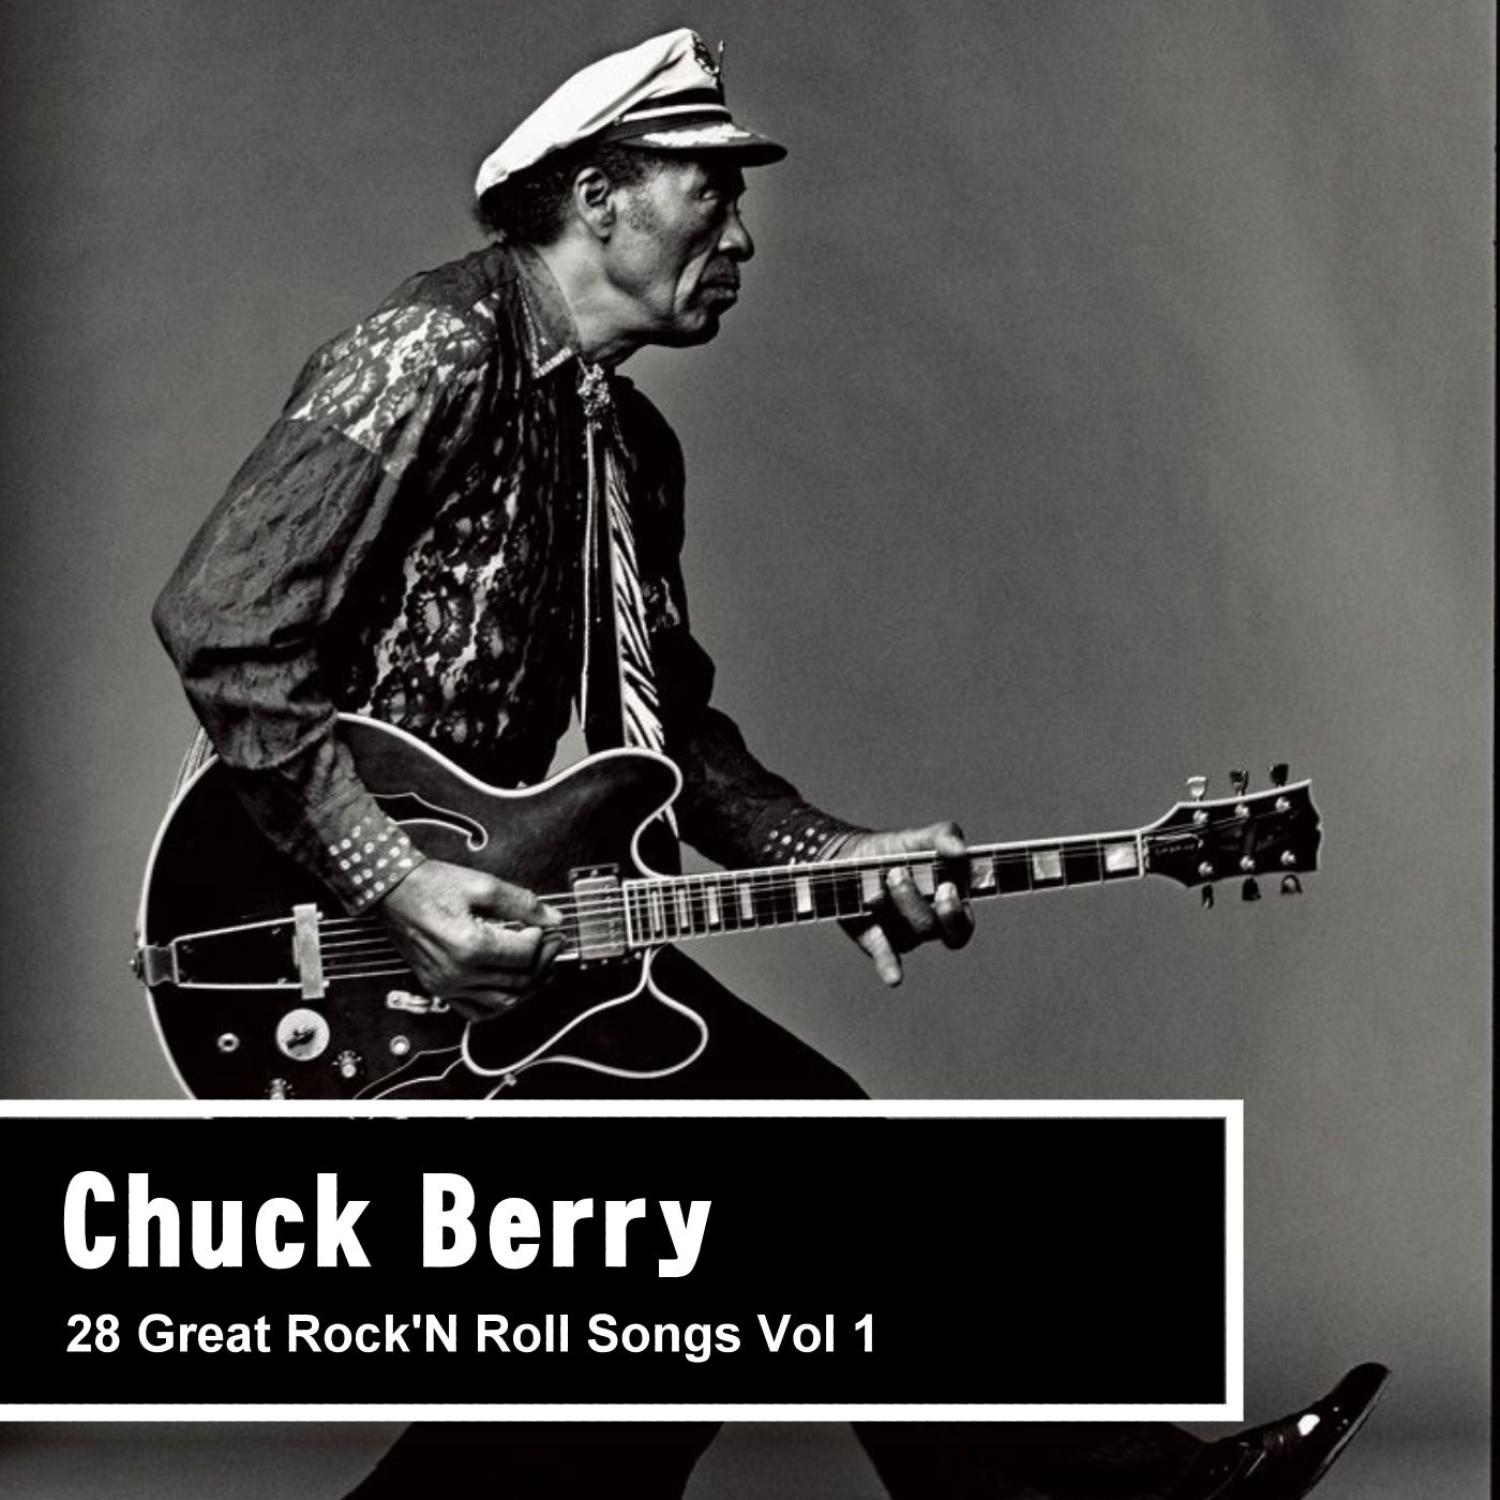 28 Great Rock'N Roll Songs Vol 1